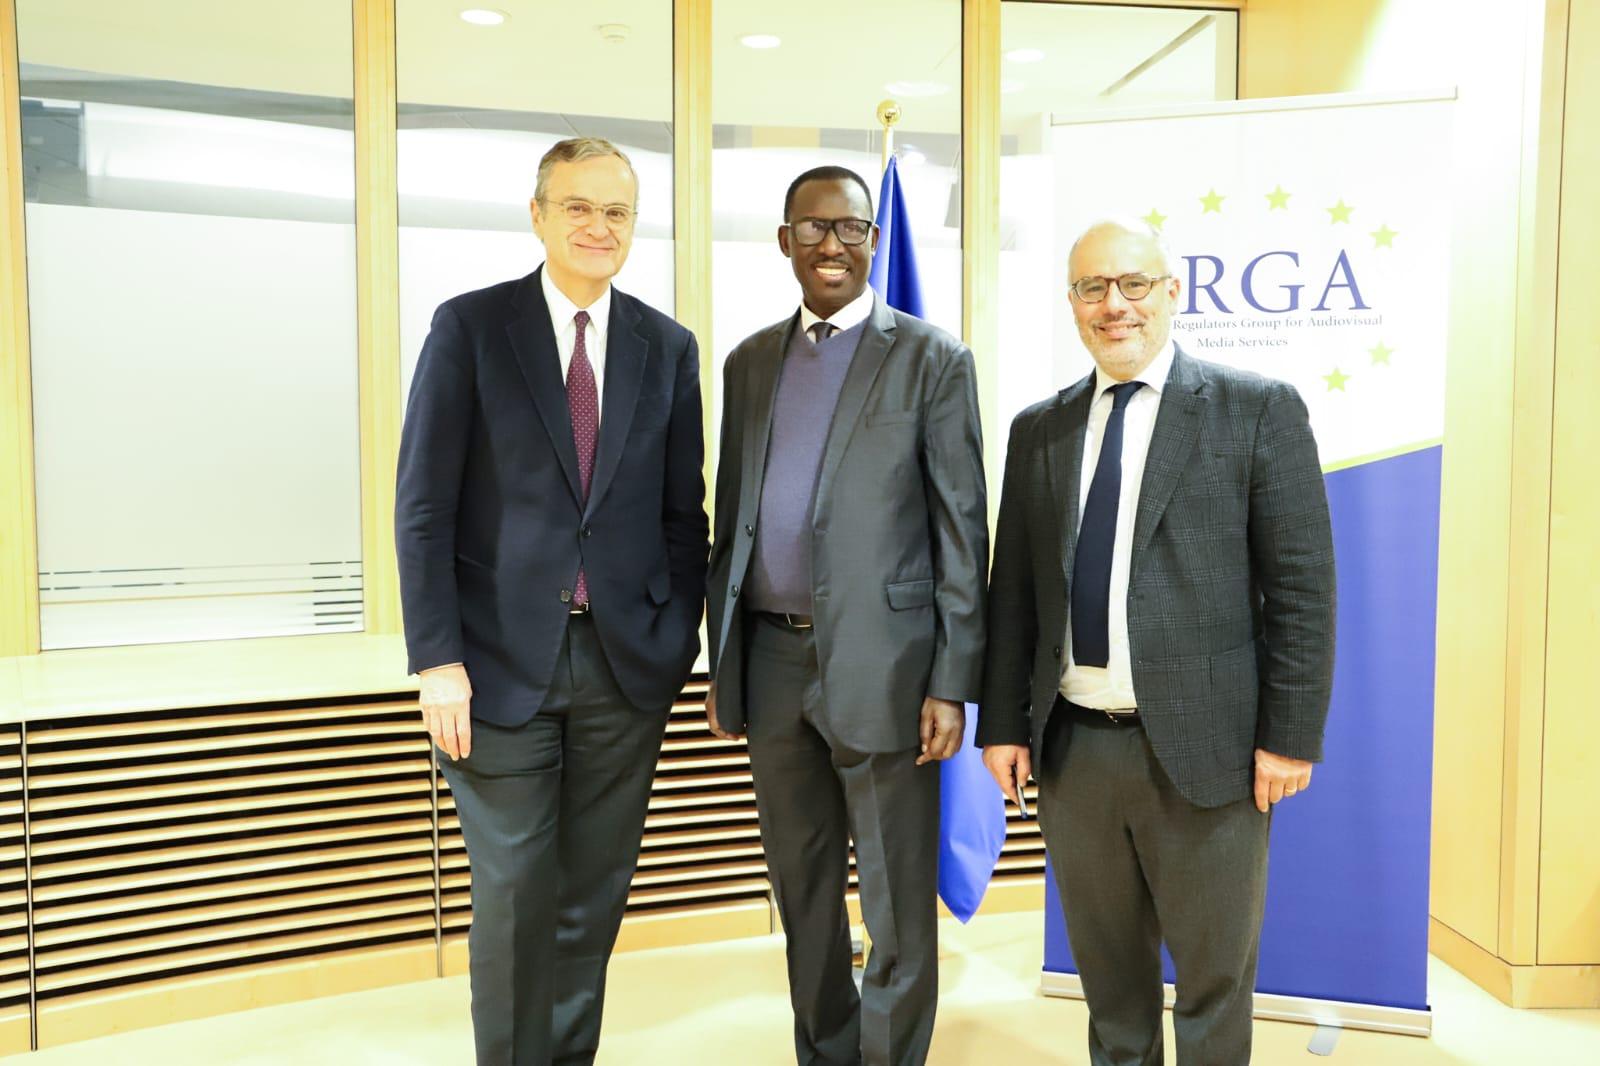 Babacar Diagne,hôte de L ‘ERGA à Bruxelles